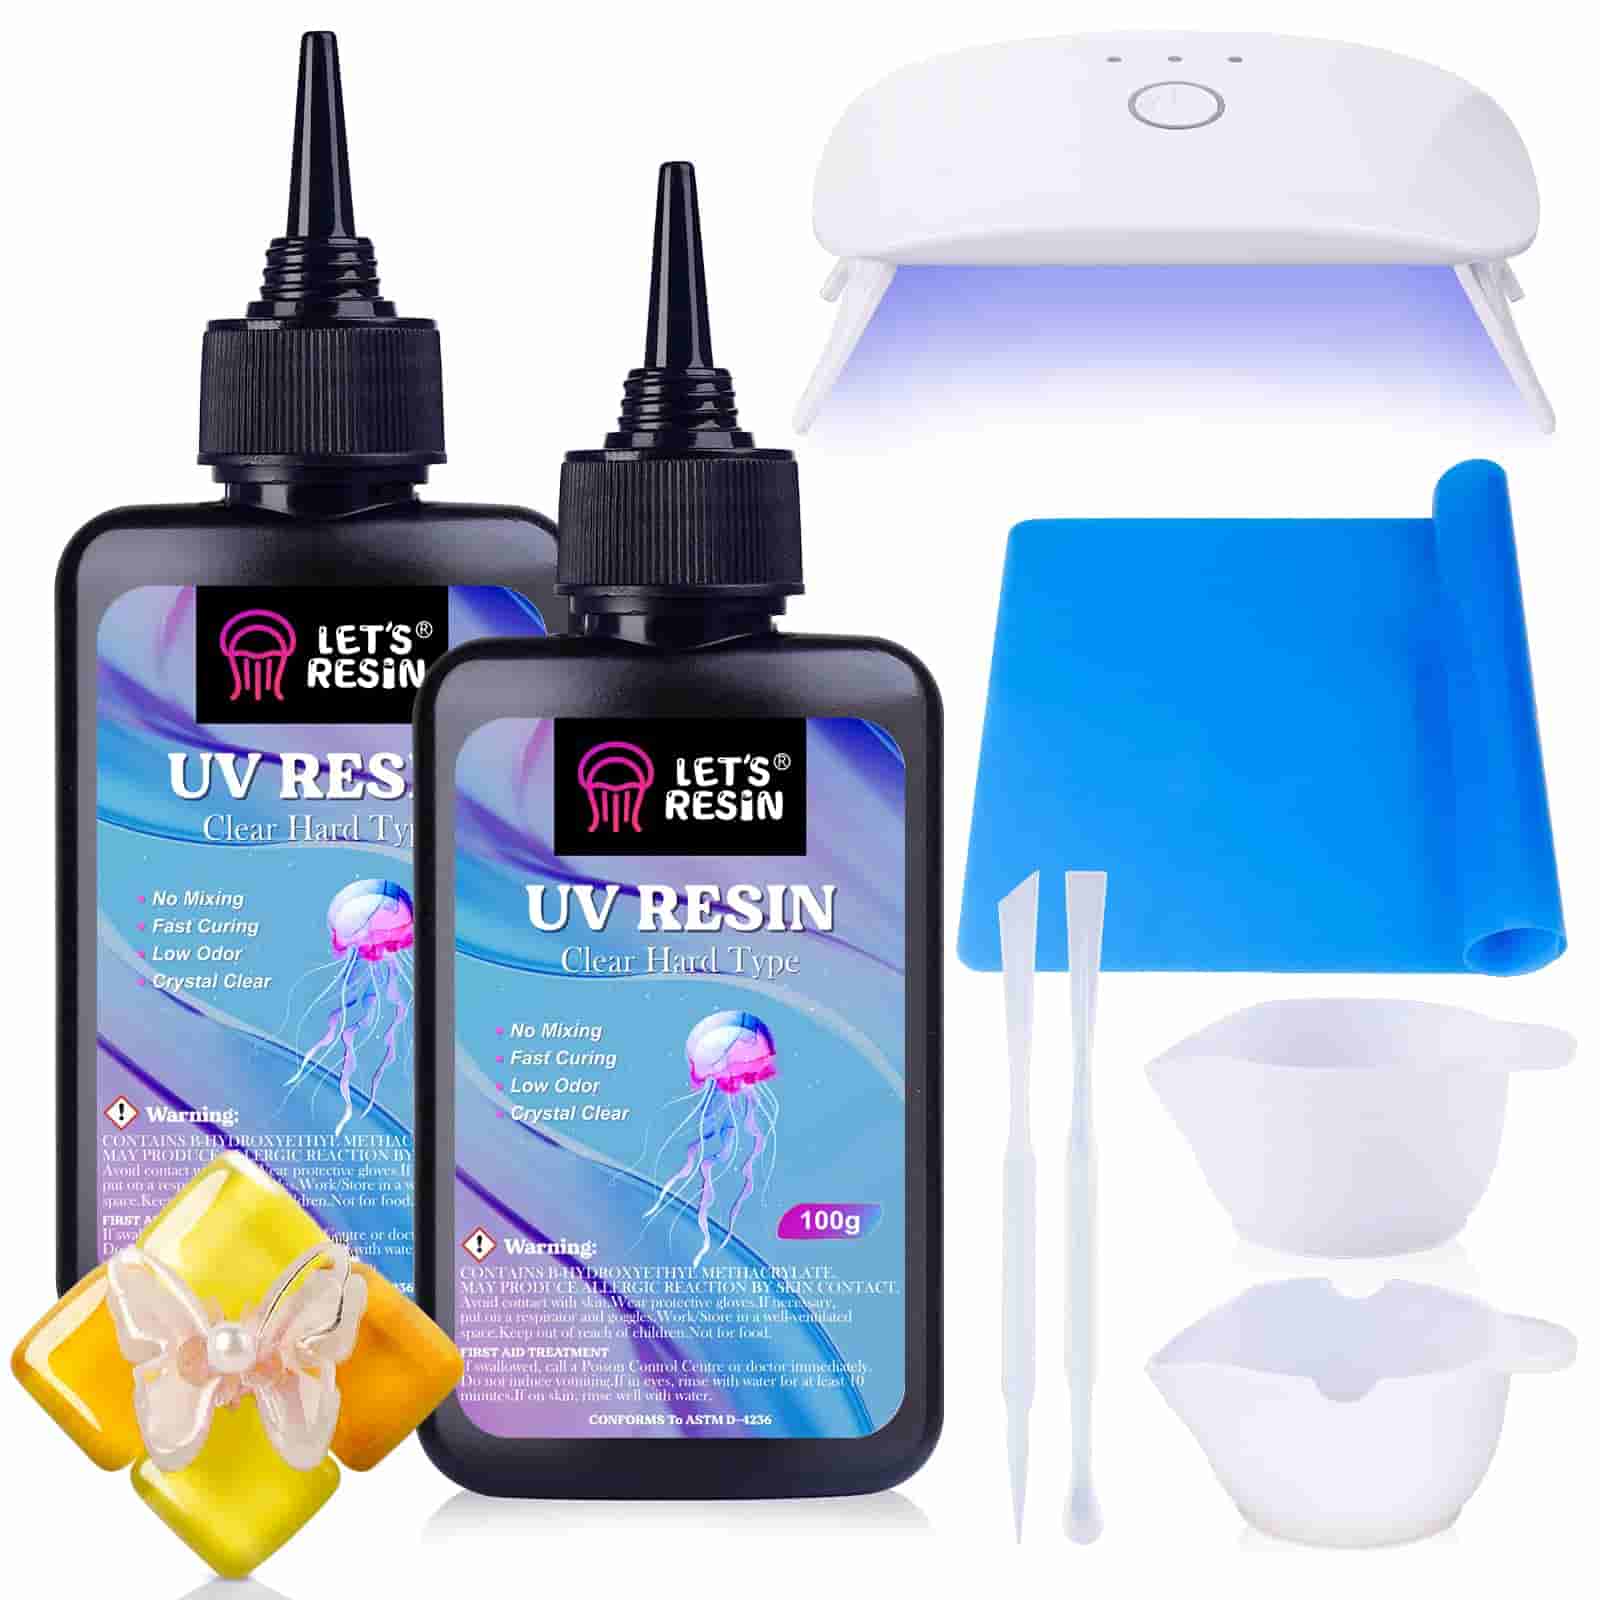 Bondic UV Cure Starter Kit Complete